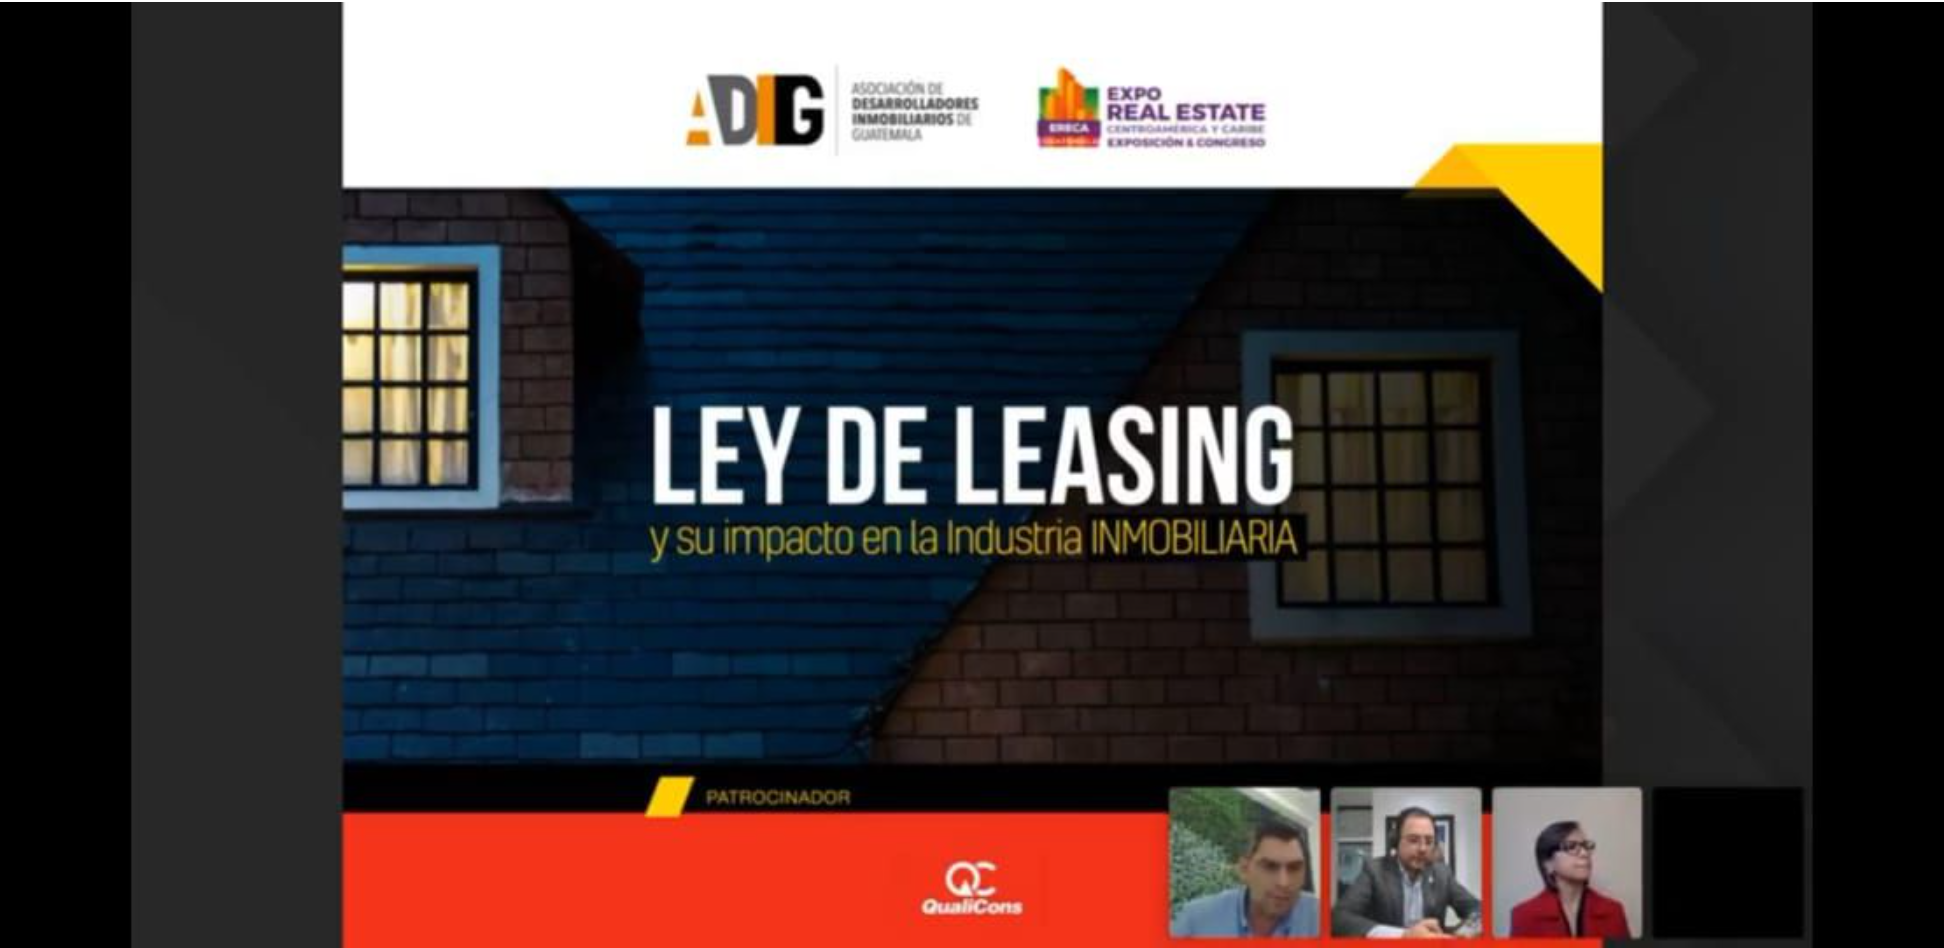 ADIG realizó un webinar  acerca de la reciente aprobada Ley de Leasing y su impacto en la industria inmobiliaria en Guatemala